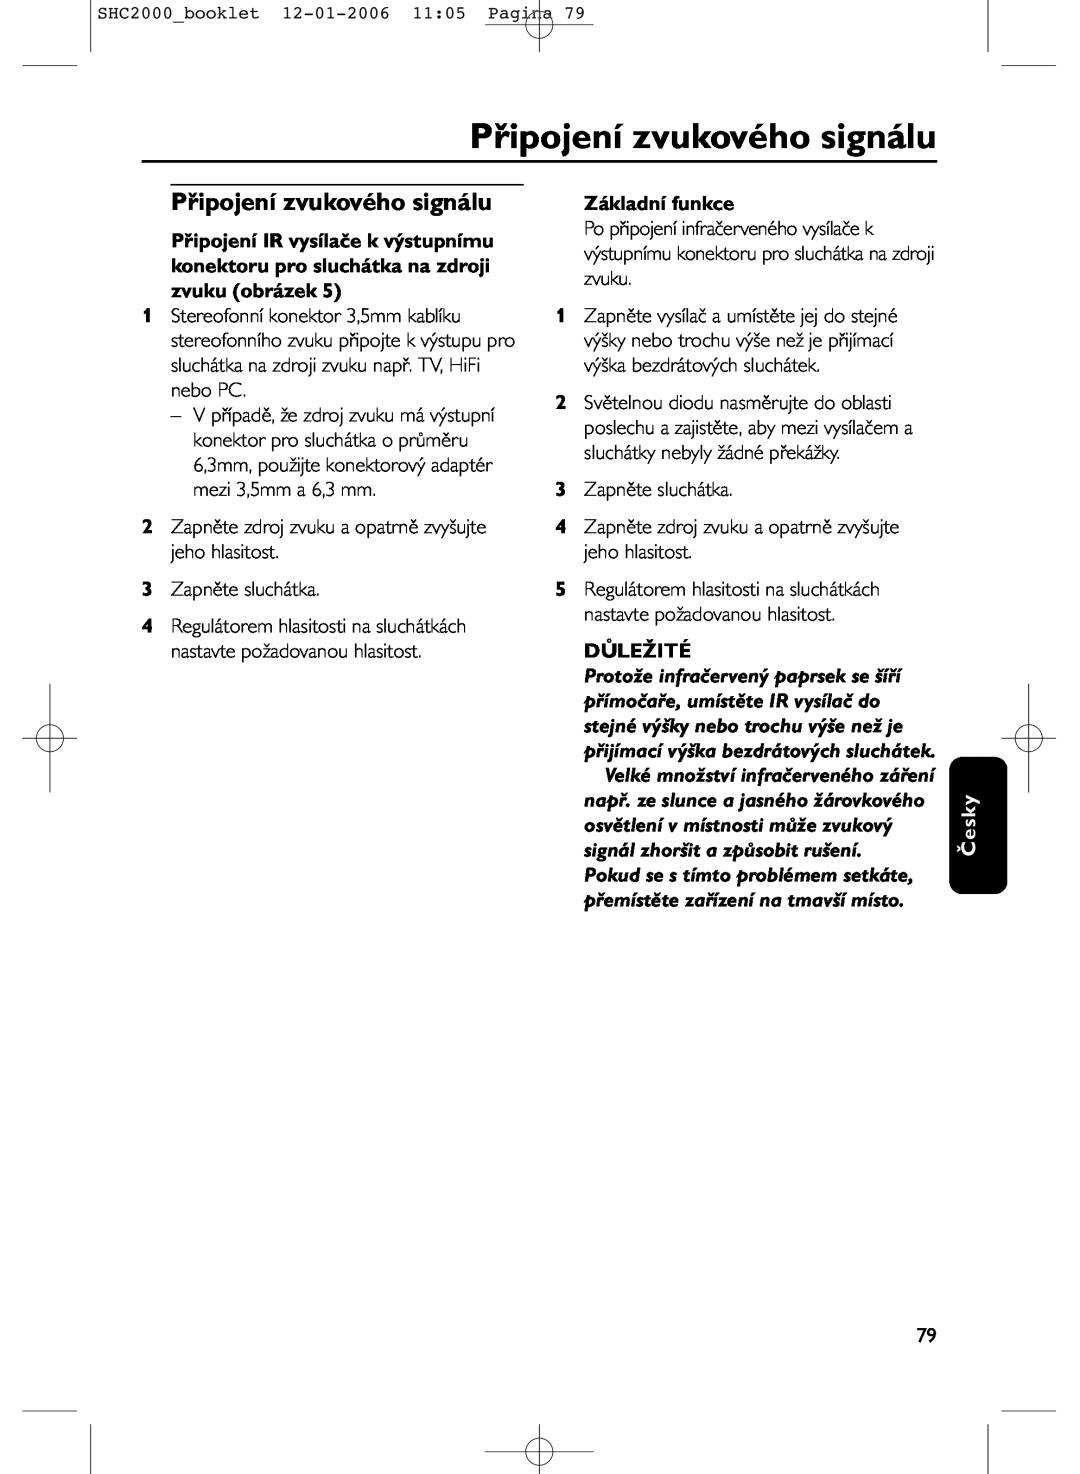 Philips SHC2000 manual Připojení zvukového signálu, Základní funkce, Důležité, Česky 